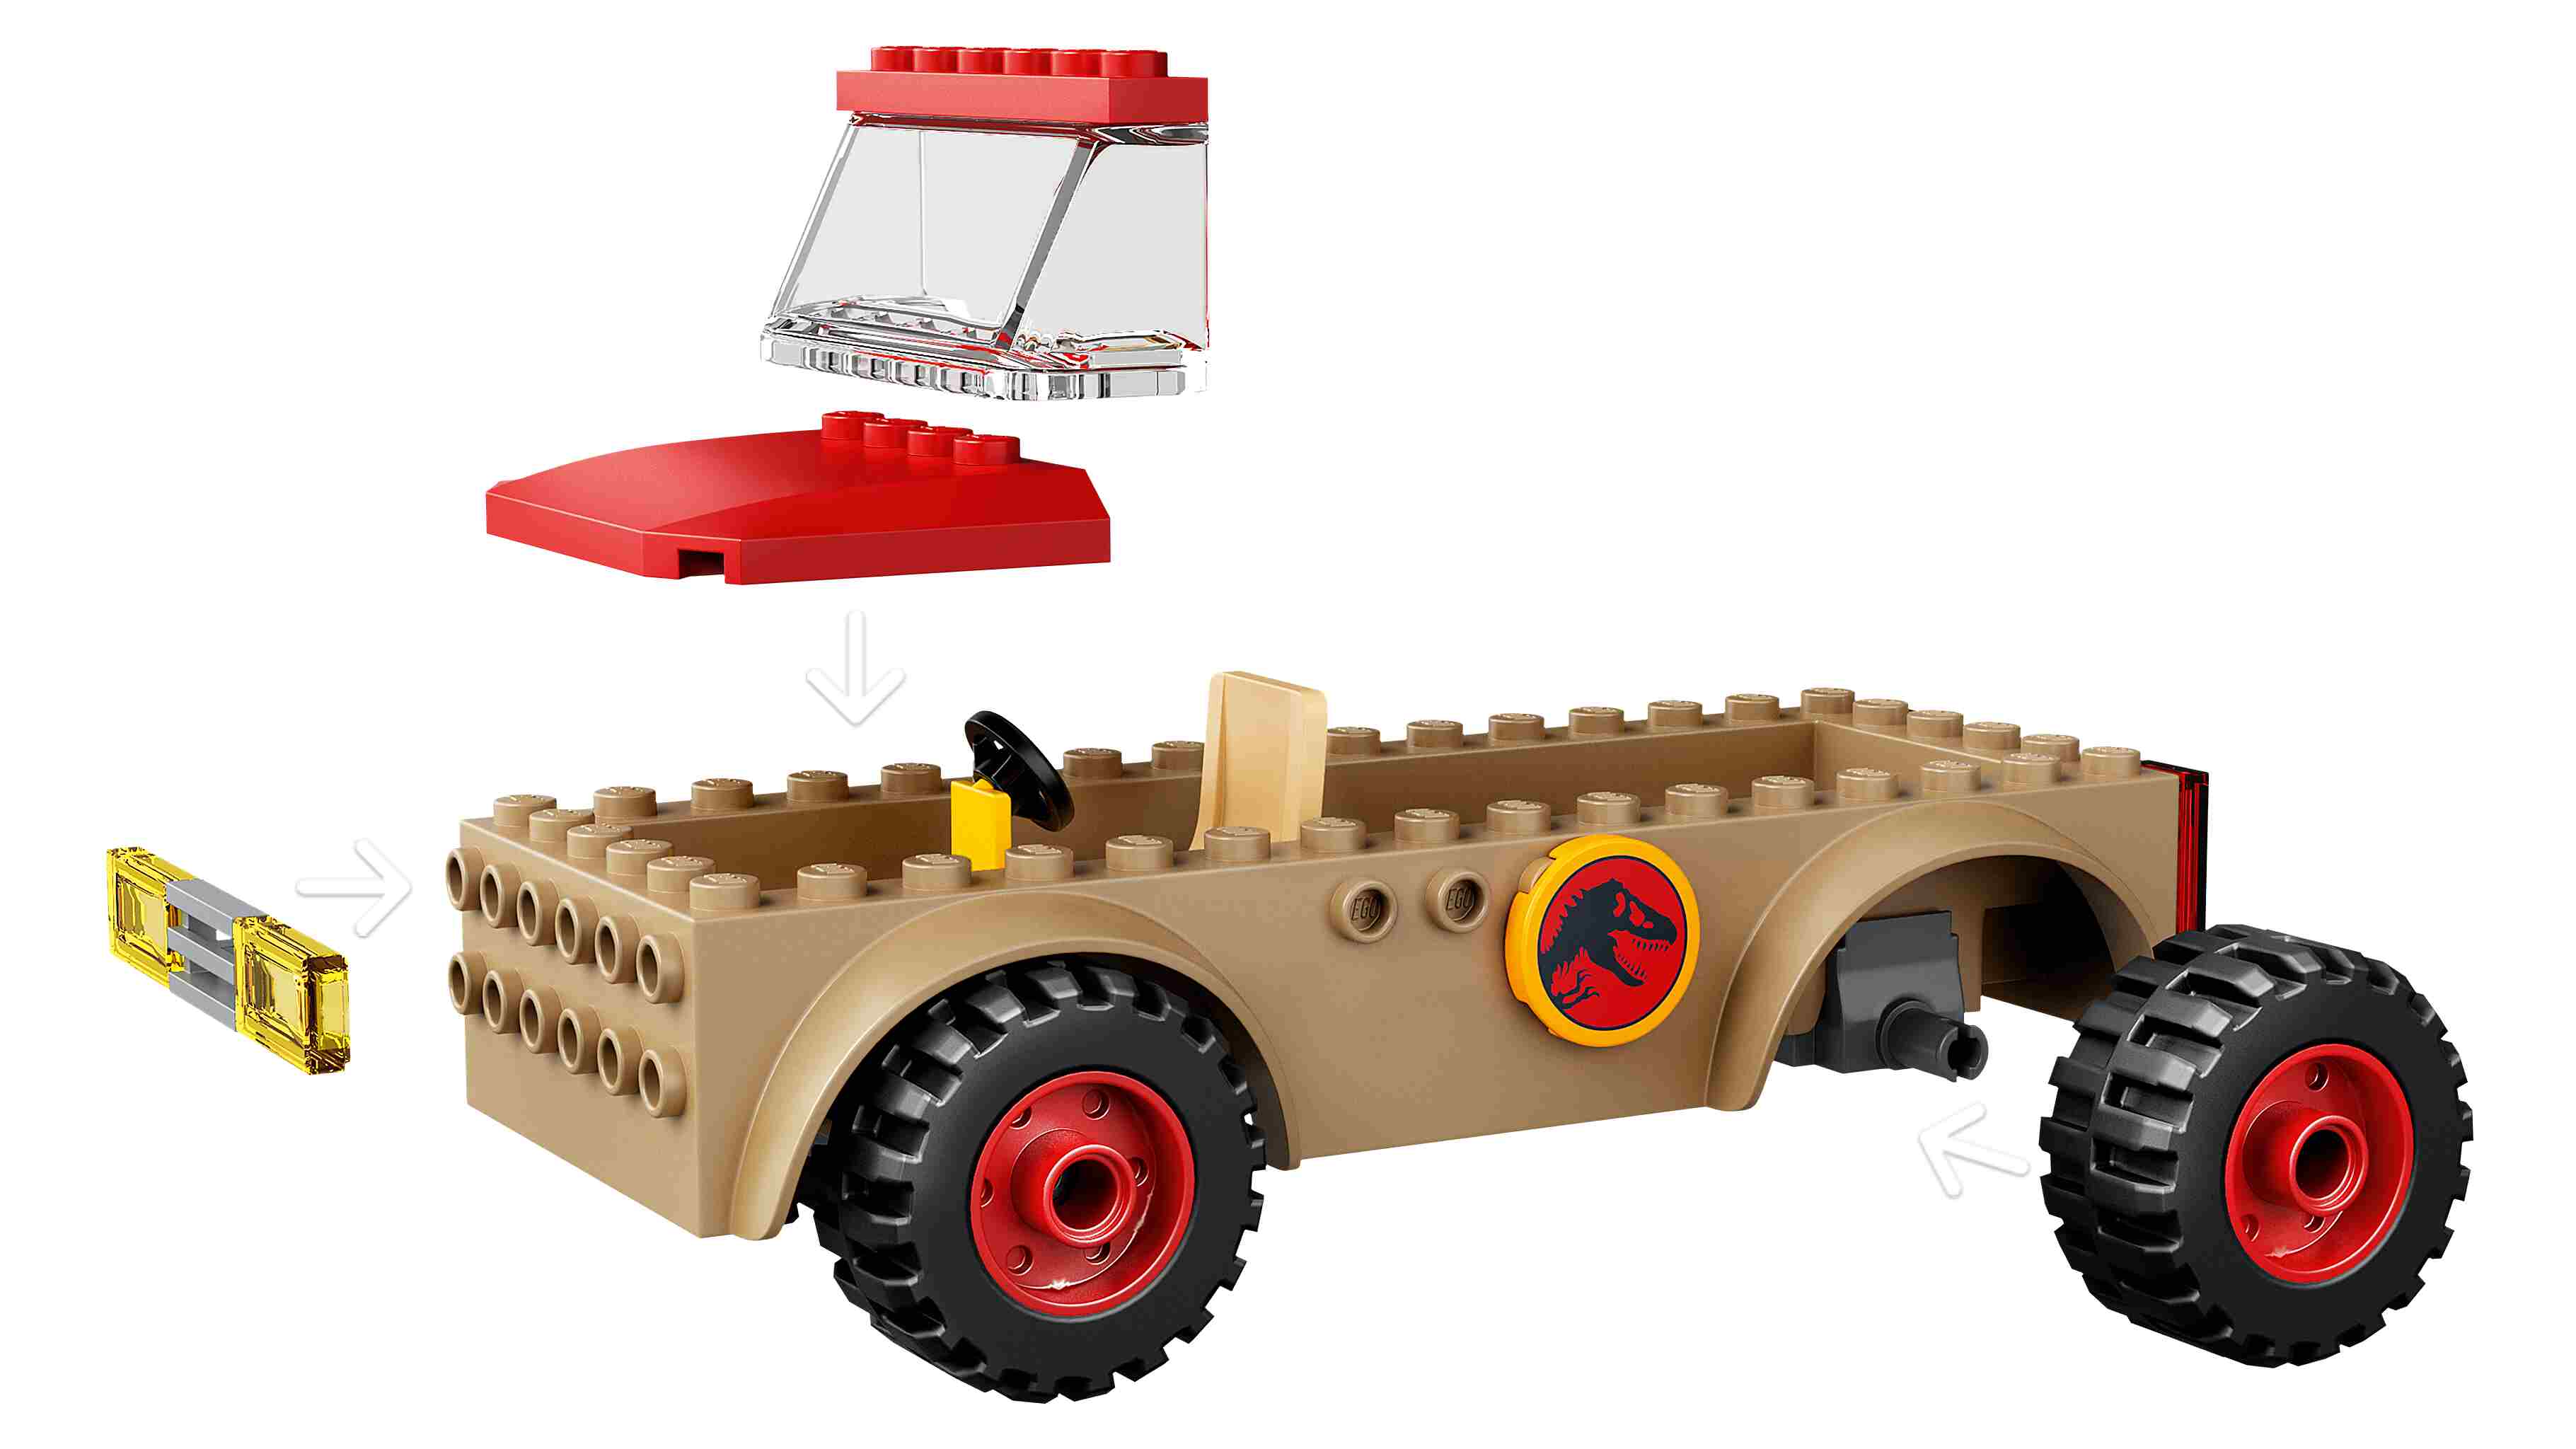 LEGO 76939 Jurassic World Flucht des Stygimoloch, 3 Miniiguren, Baumhaus